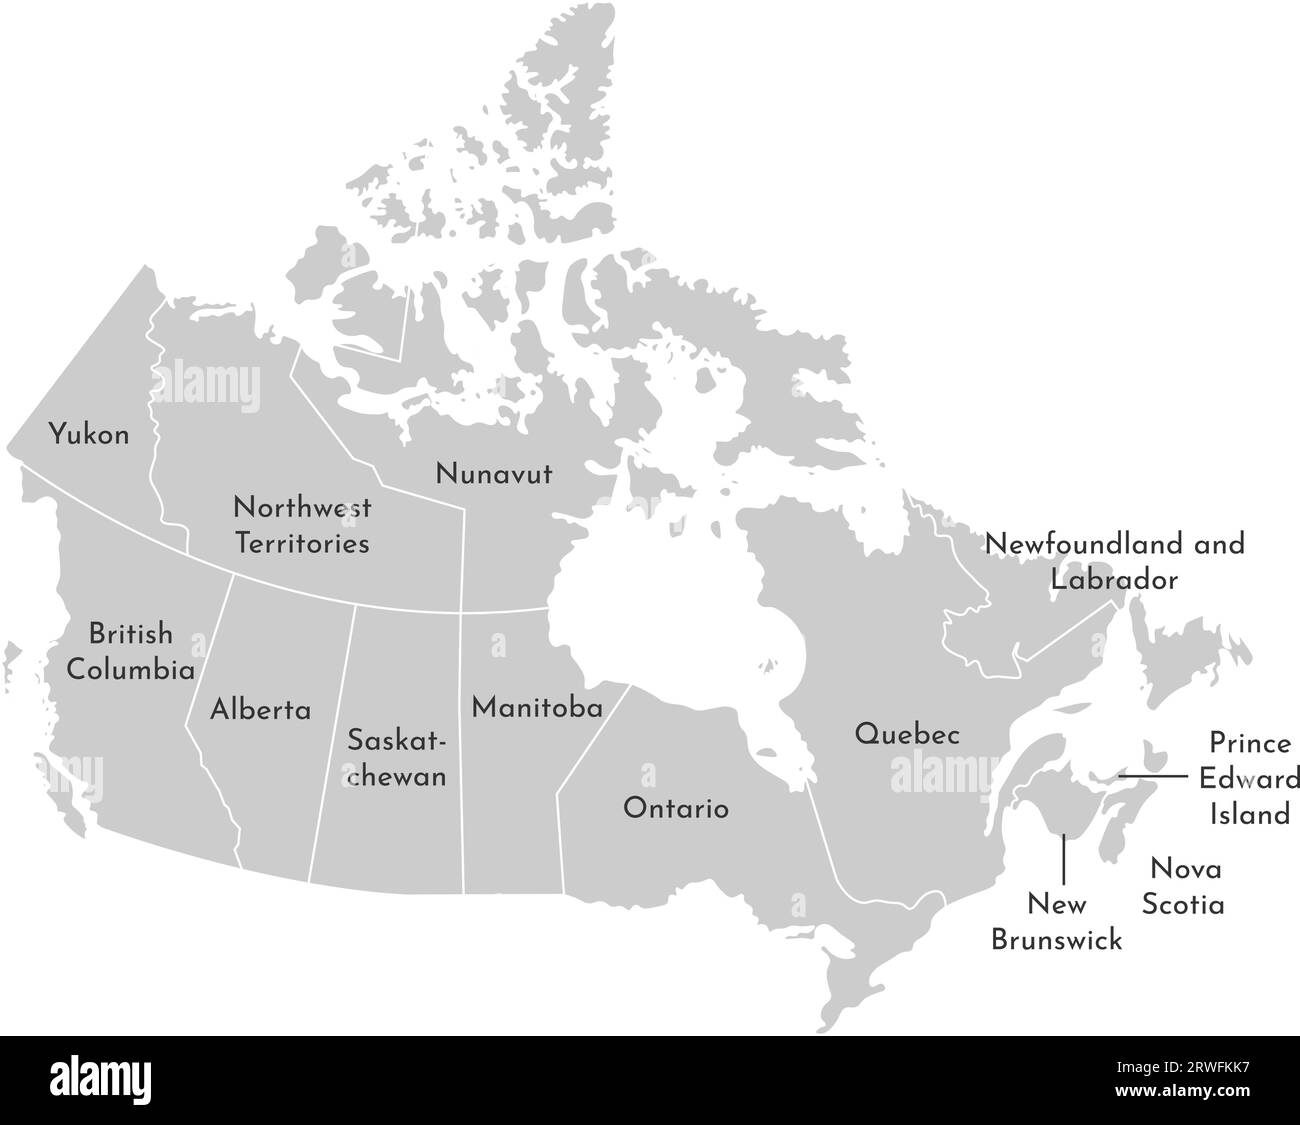 Vektor-isolierte Illustration einer vereinfachten Verwaltungskarte Kanadas. Grenzen und Namen der Provinzen (Regionen). Graue Silhouetten. Weiße Umrandung Stock Vektor